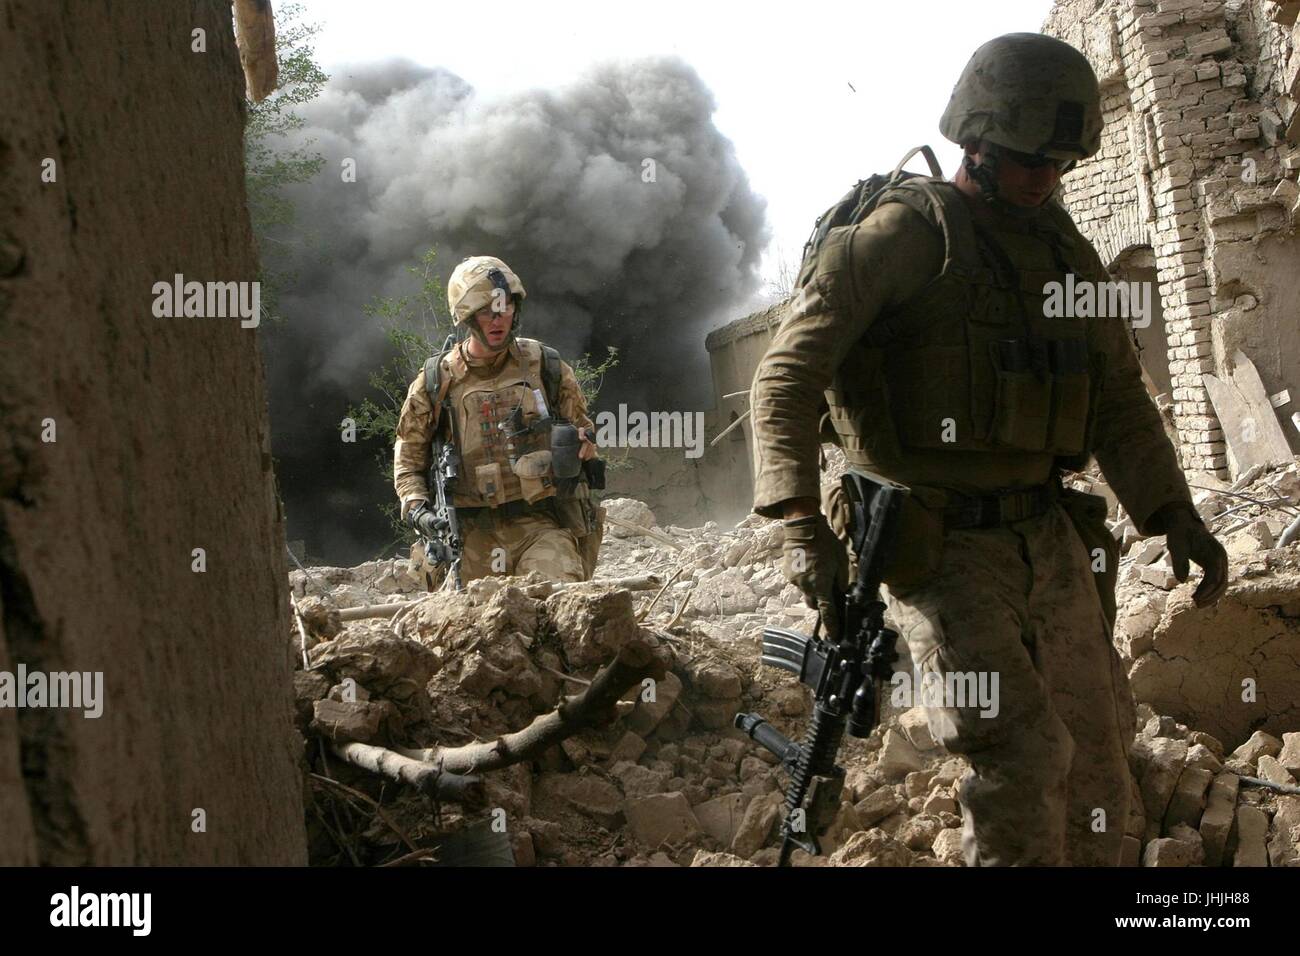 USA und estnische Soldaten laufen über Schutt als eine kontrollierte Sprengung dahinter 26. Oktober 2008 in jetzt Zad, Afghanistan explodiert.    (Foto von Freddy G. Cantu über Planetpix) Stockfoto